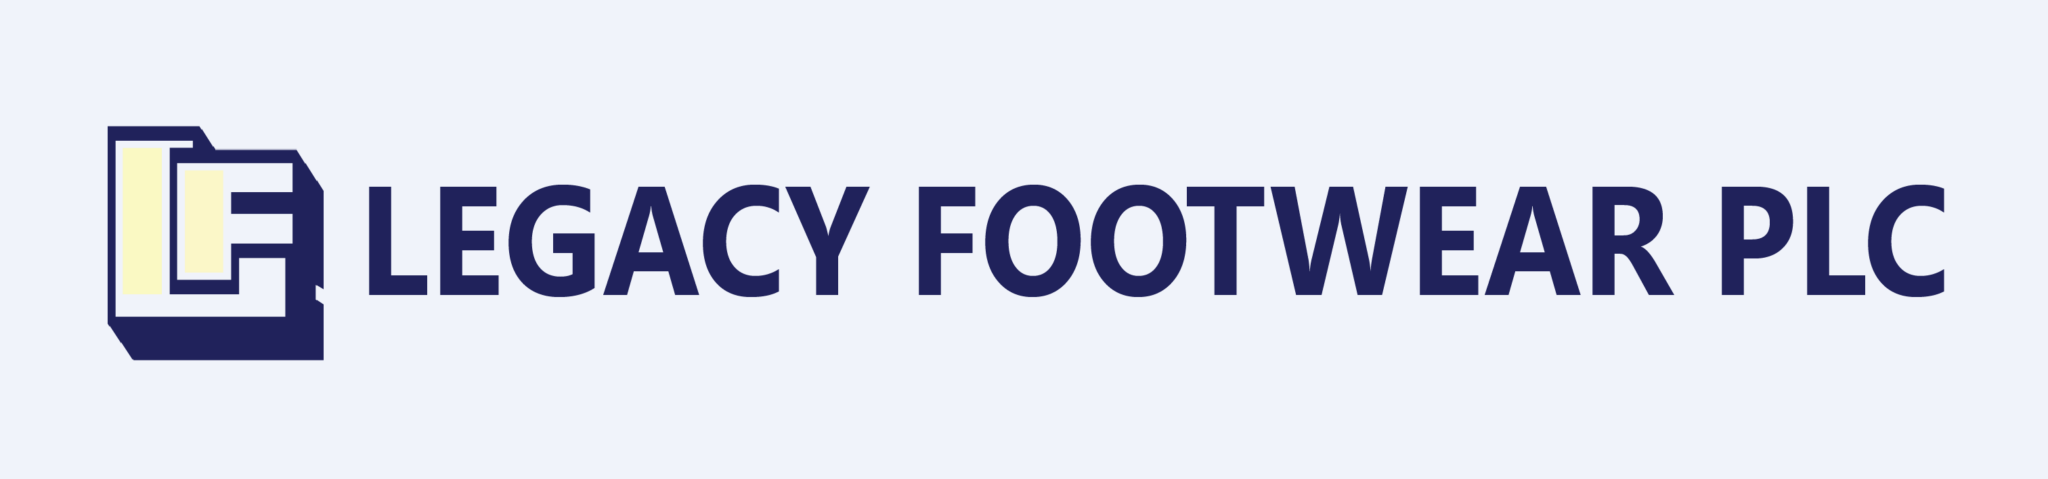 legacy-footwear-plc logo